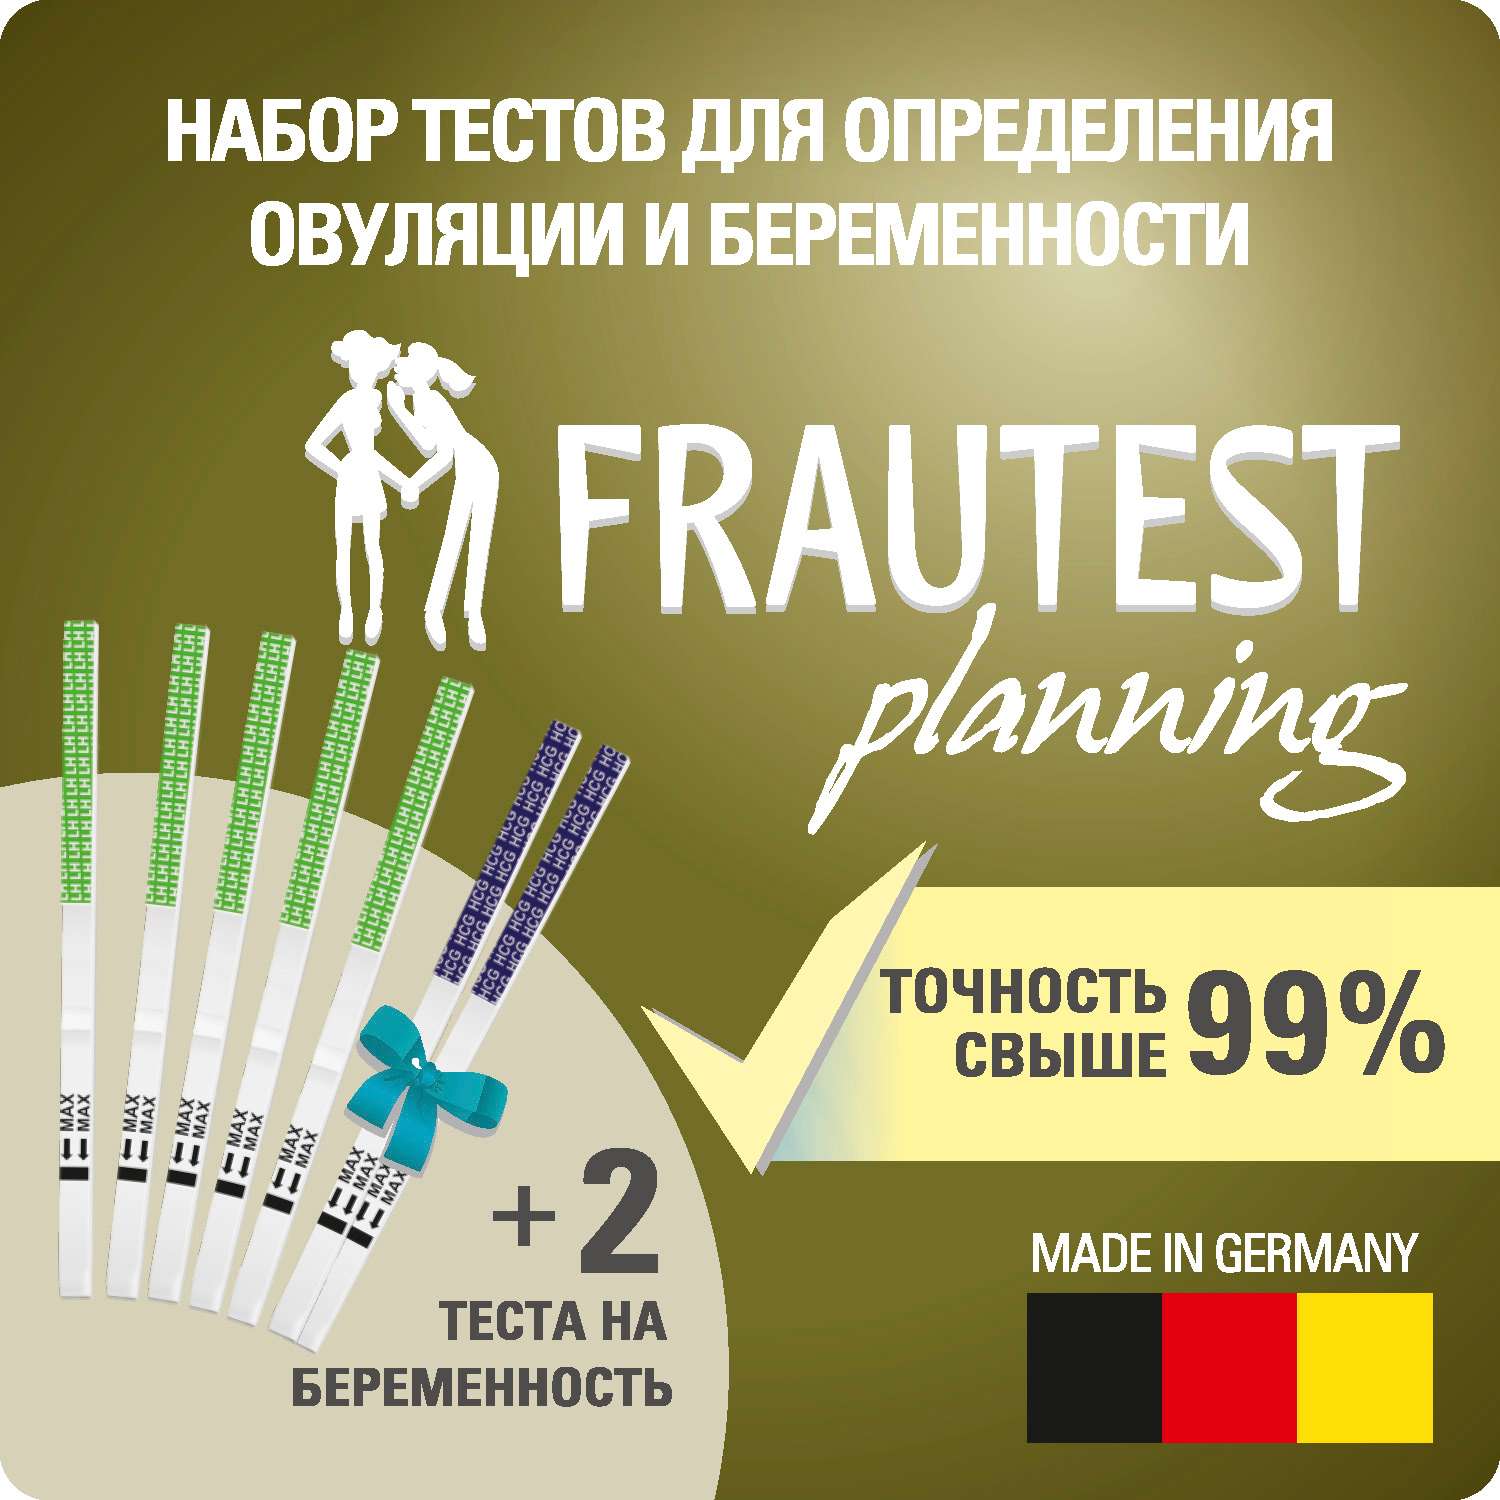 Тест на беременность Frautest и овуляцию planning - фото 2